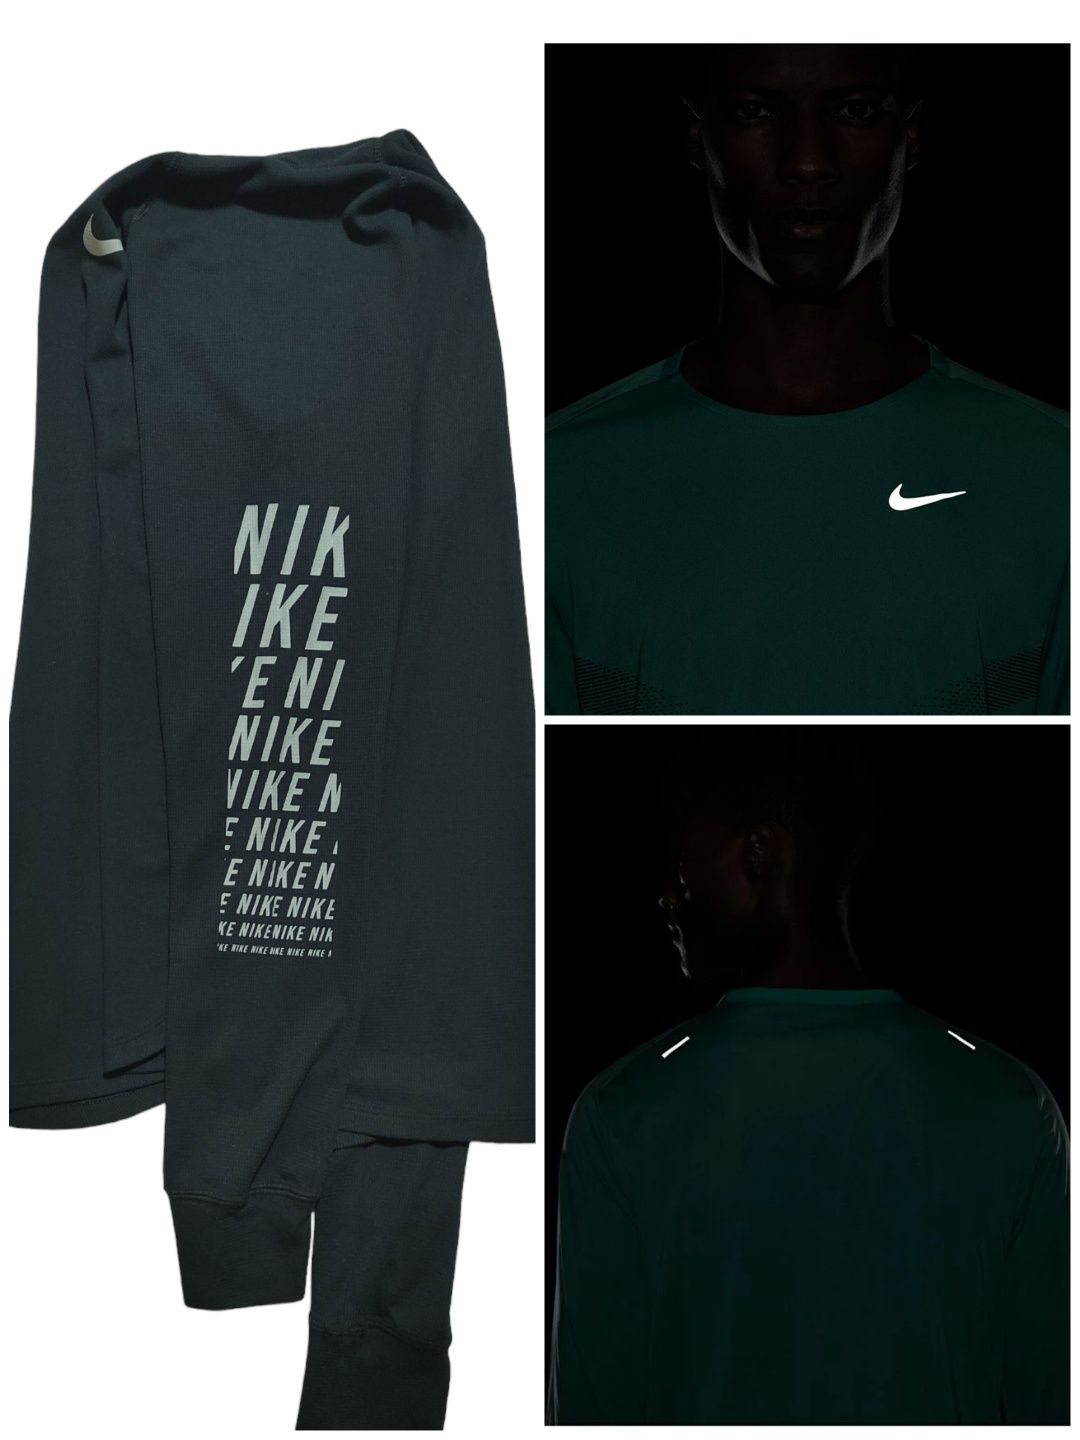 Кофта футболка лонгслив Nike originals оригинал size S, M